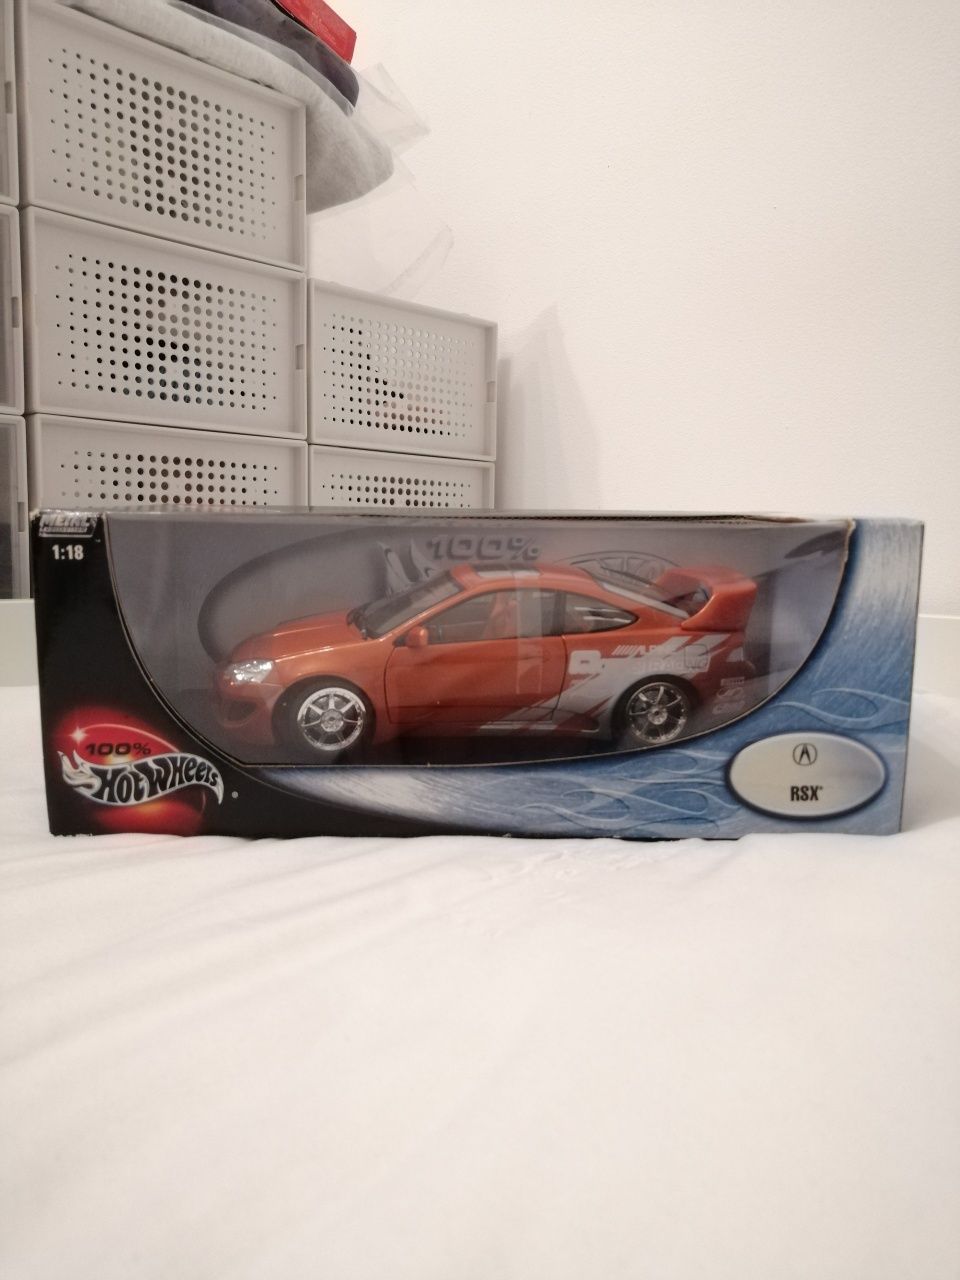 Hot Wheels 1:18 Acura RSX